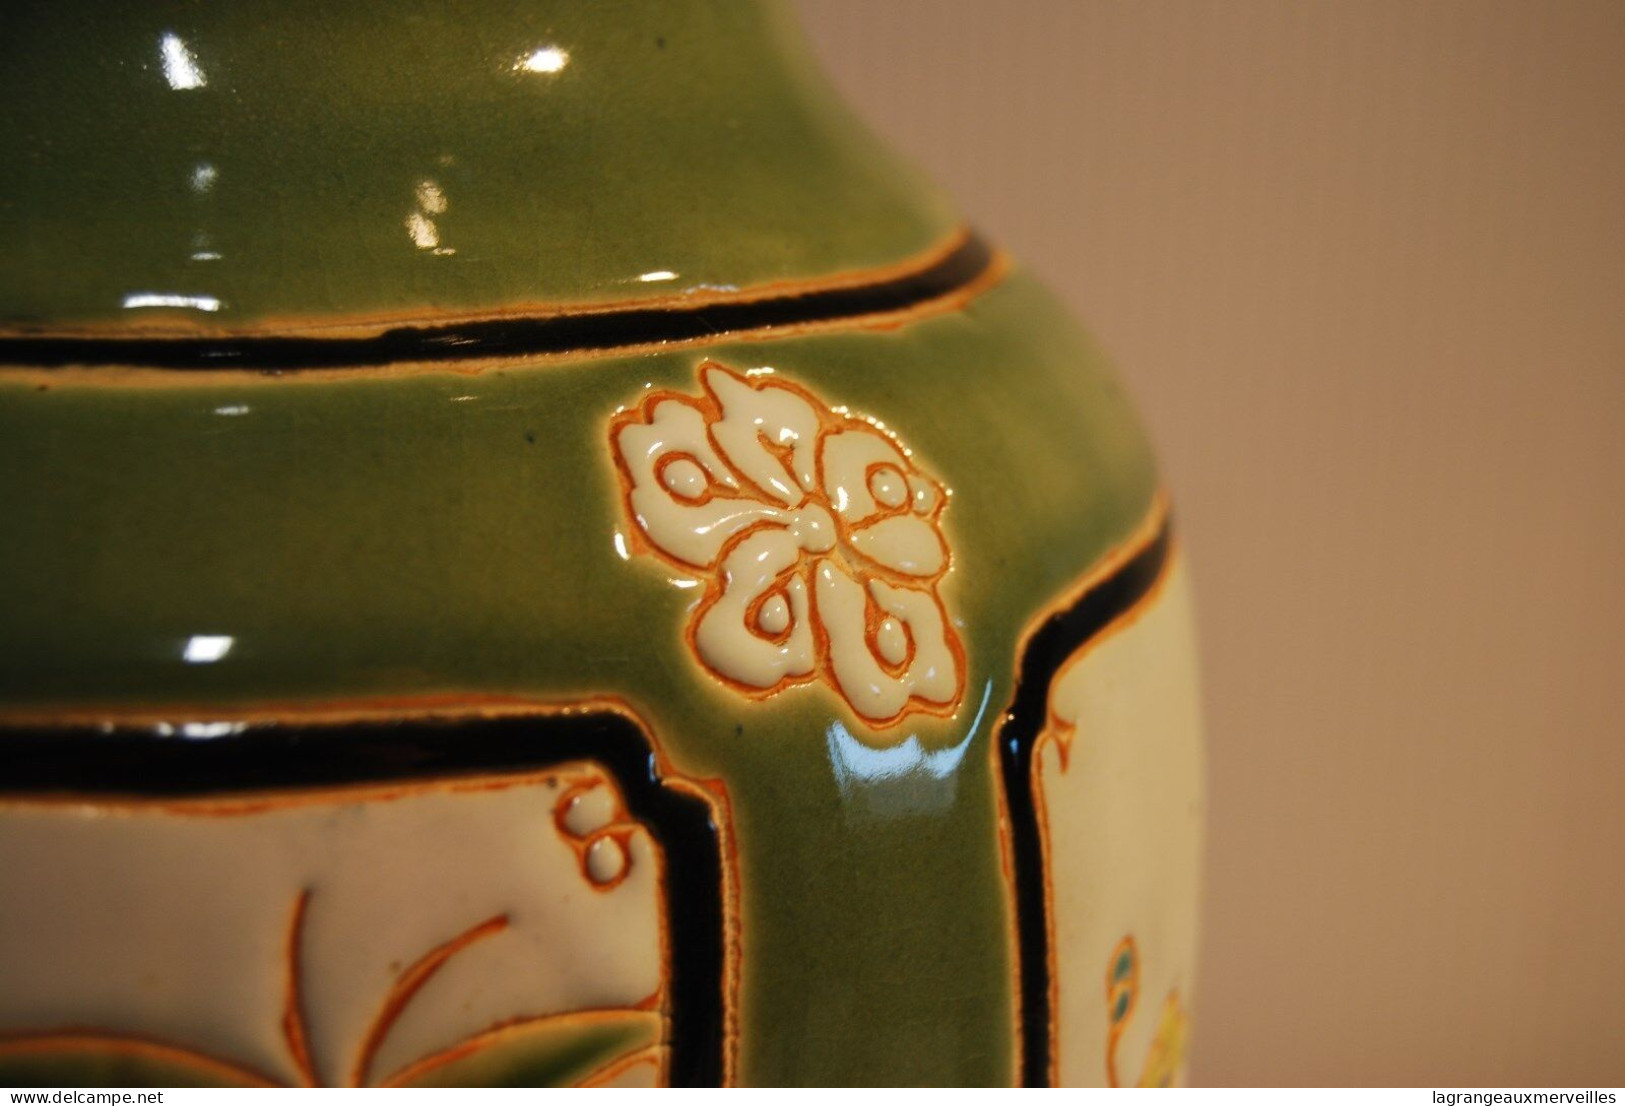 E1 Grand Vase De 39 Cm Style Iles Paradisiaque - Vasi